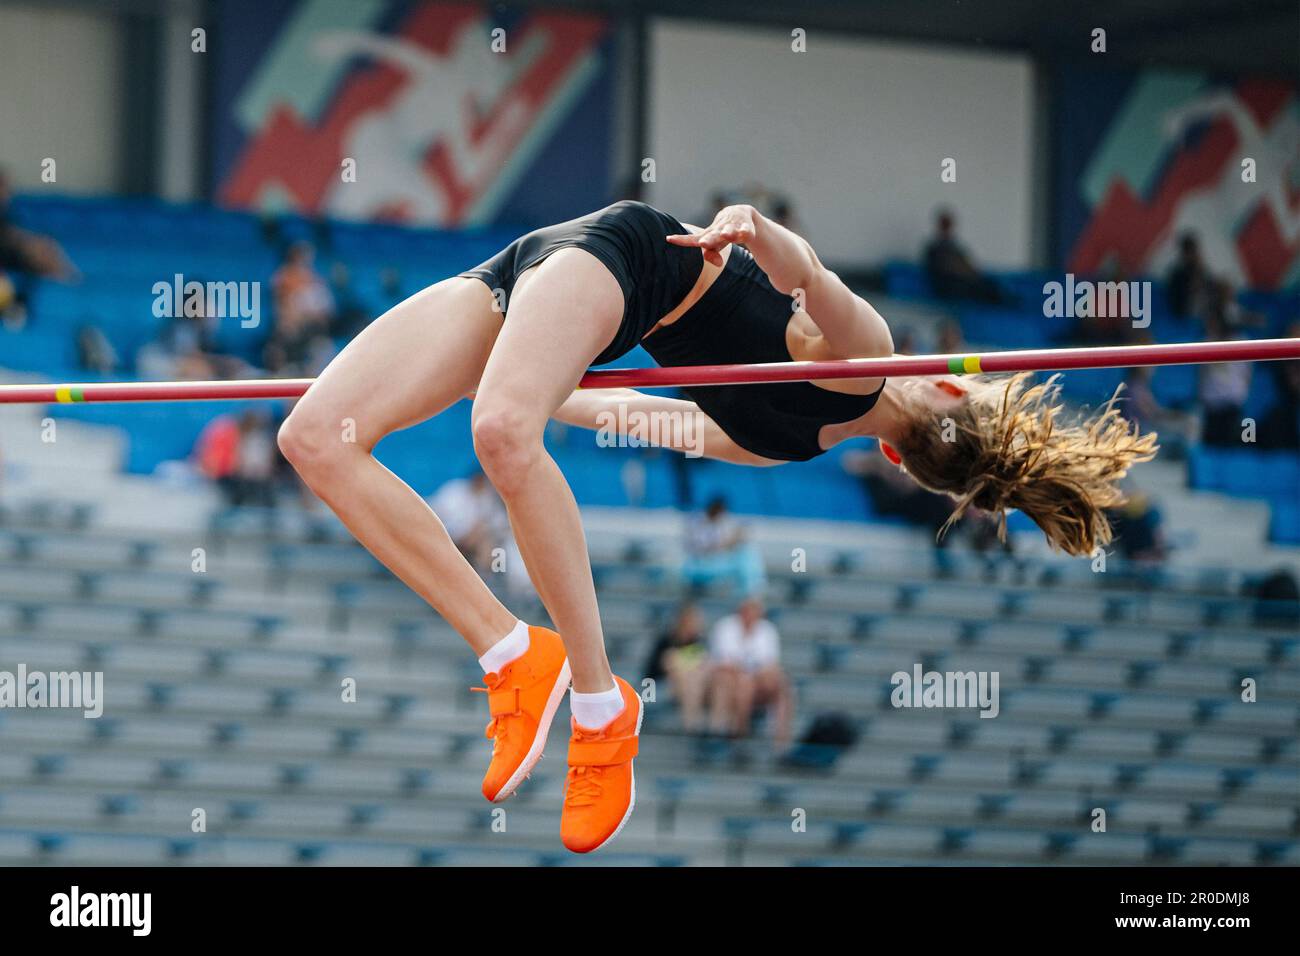 giovane donna jumper alto salto nei campionati estivi di atletica, fosbury flop technique Foto Stock